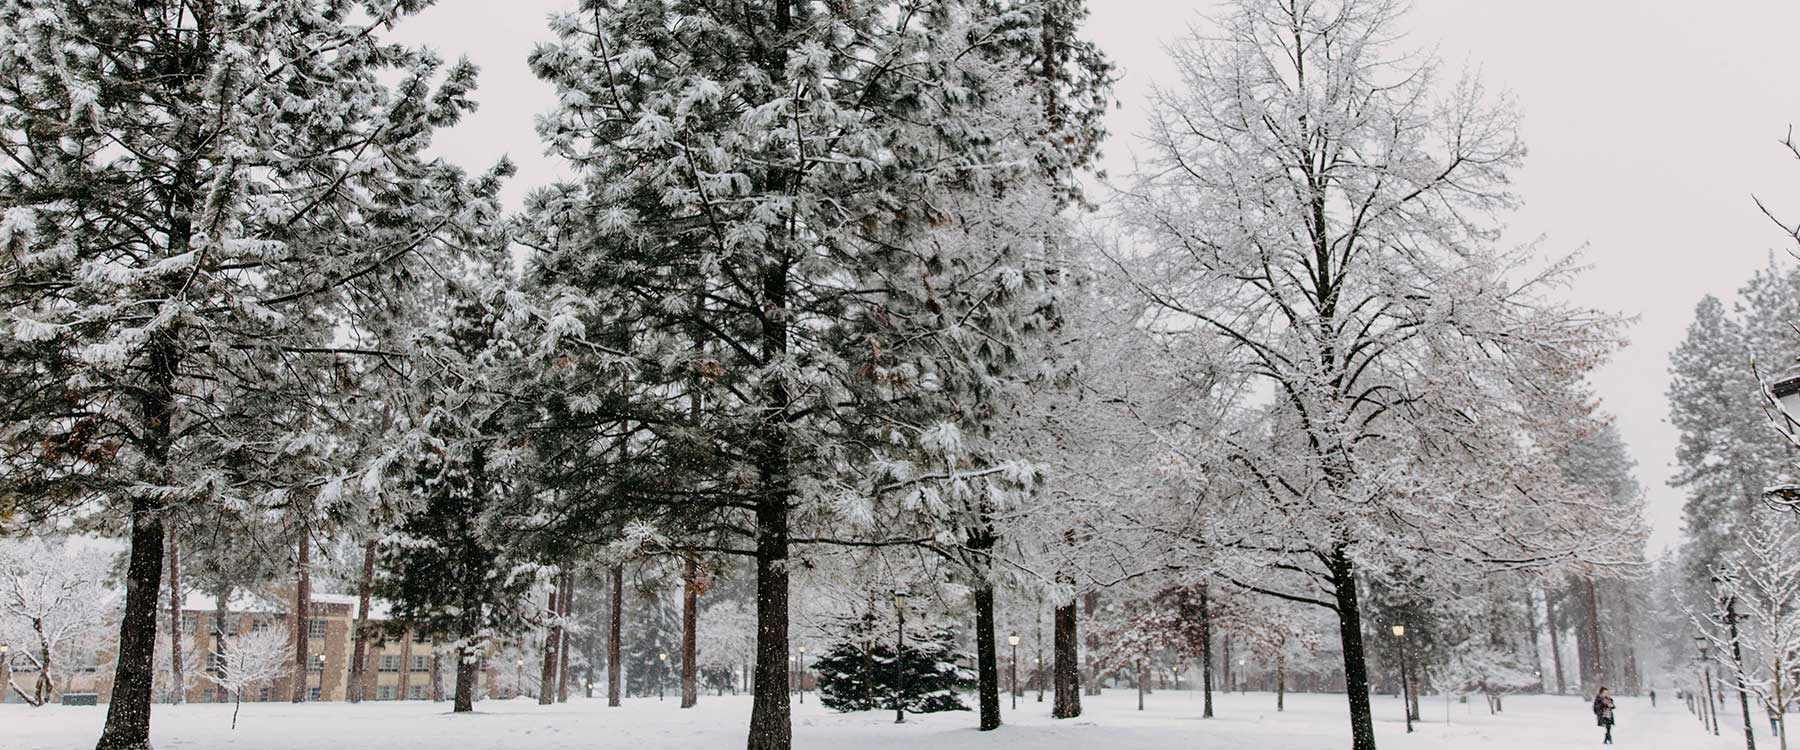 Whitworths campus in Winter